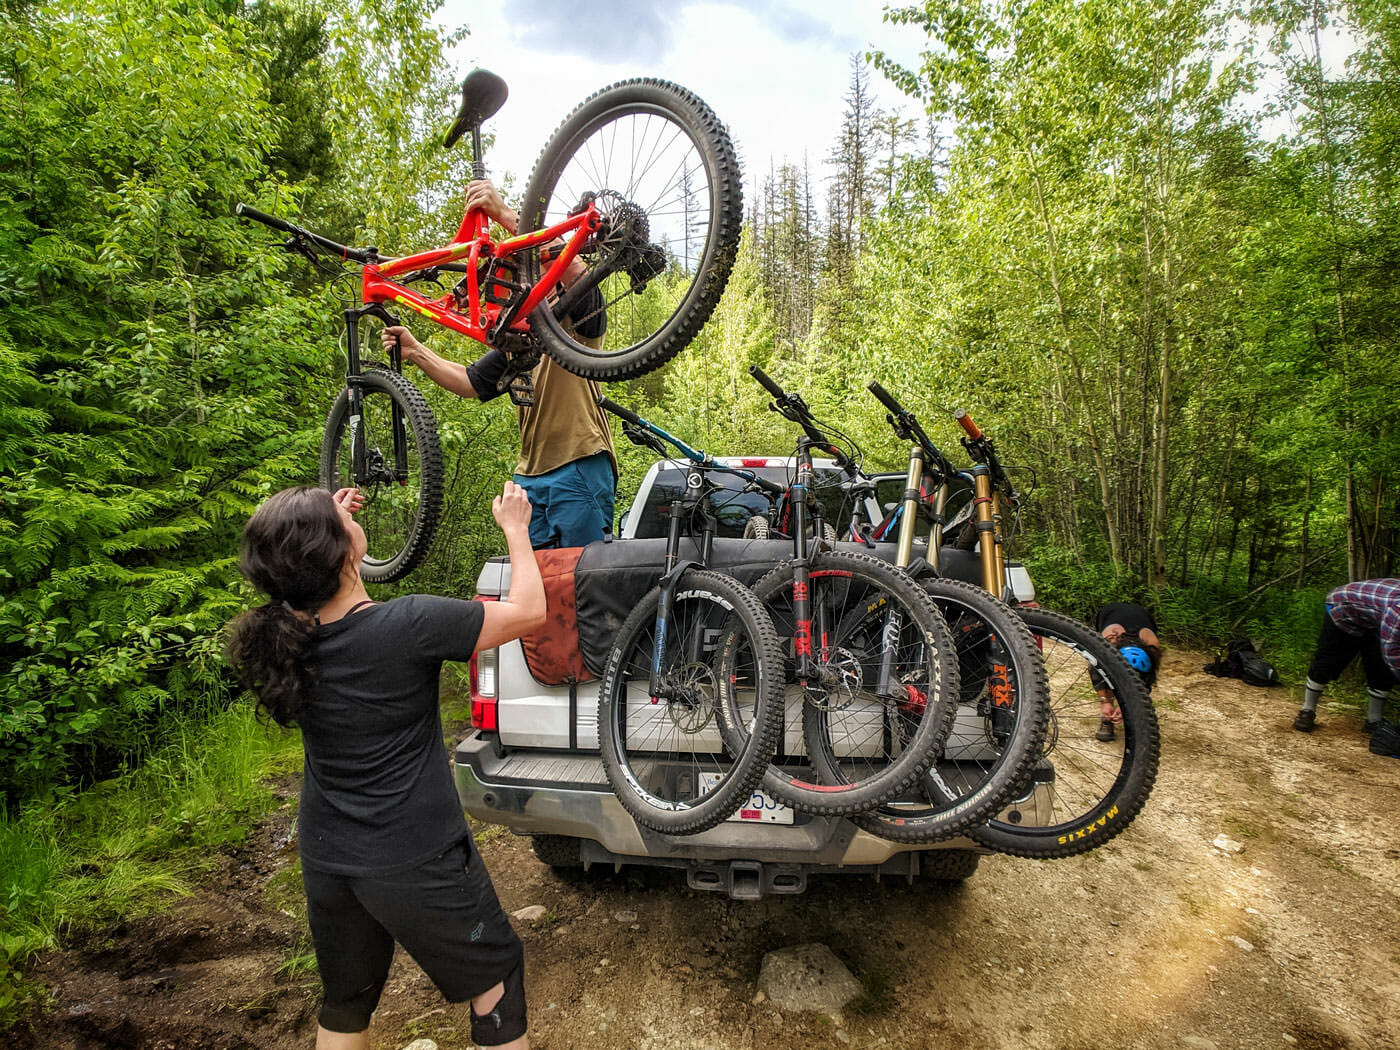 West Kootenay biking: Man hands mountain bike to woman from truck in the Merry Creek biking area in Castlegar, BC